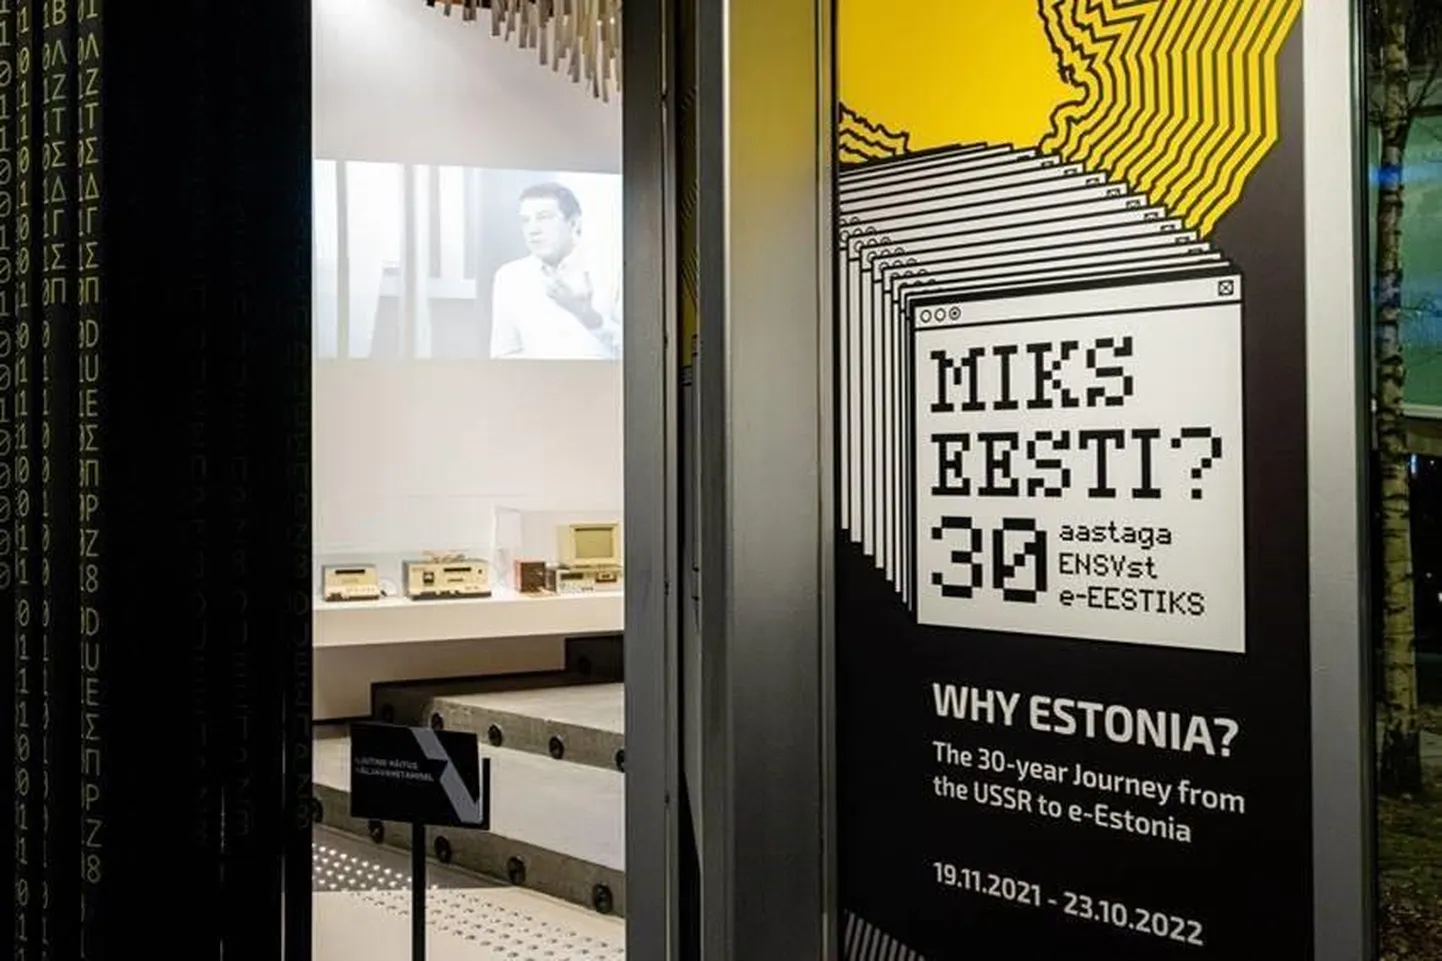 Näitus "Miks Eesti? 30 aastaga ENSV-st e-Eestiks" võtab kokku Eesti digiühiskonna kujunemisloo.